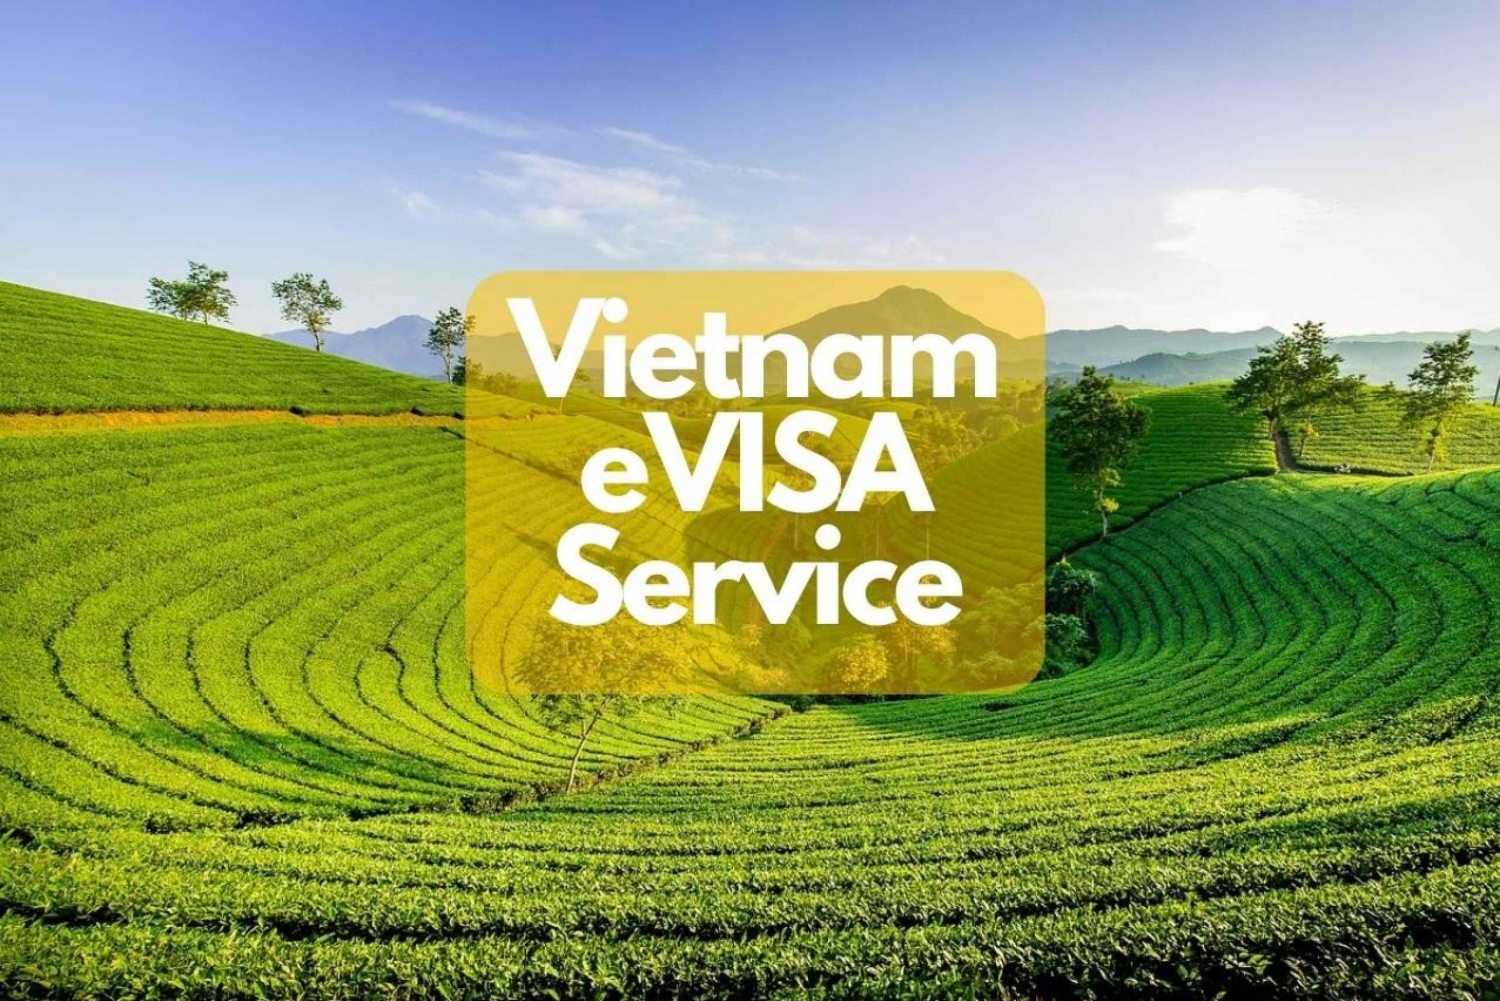 Vietnam E-Visa Service für internationale Reisende